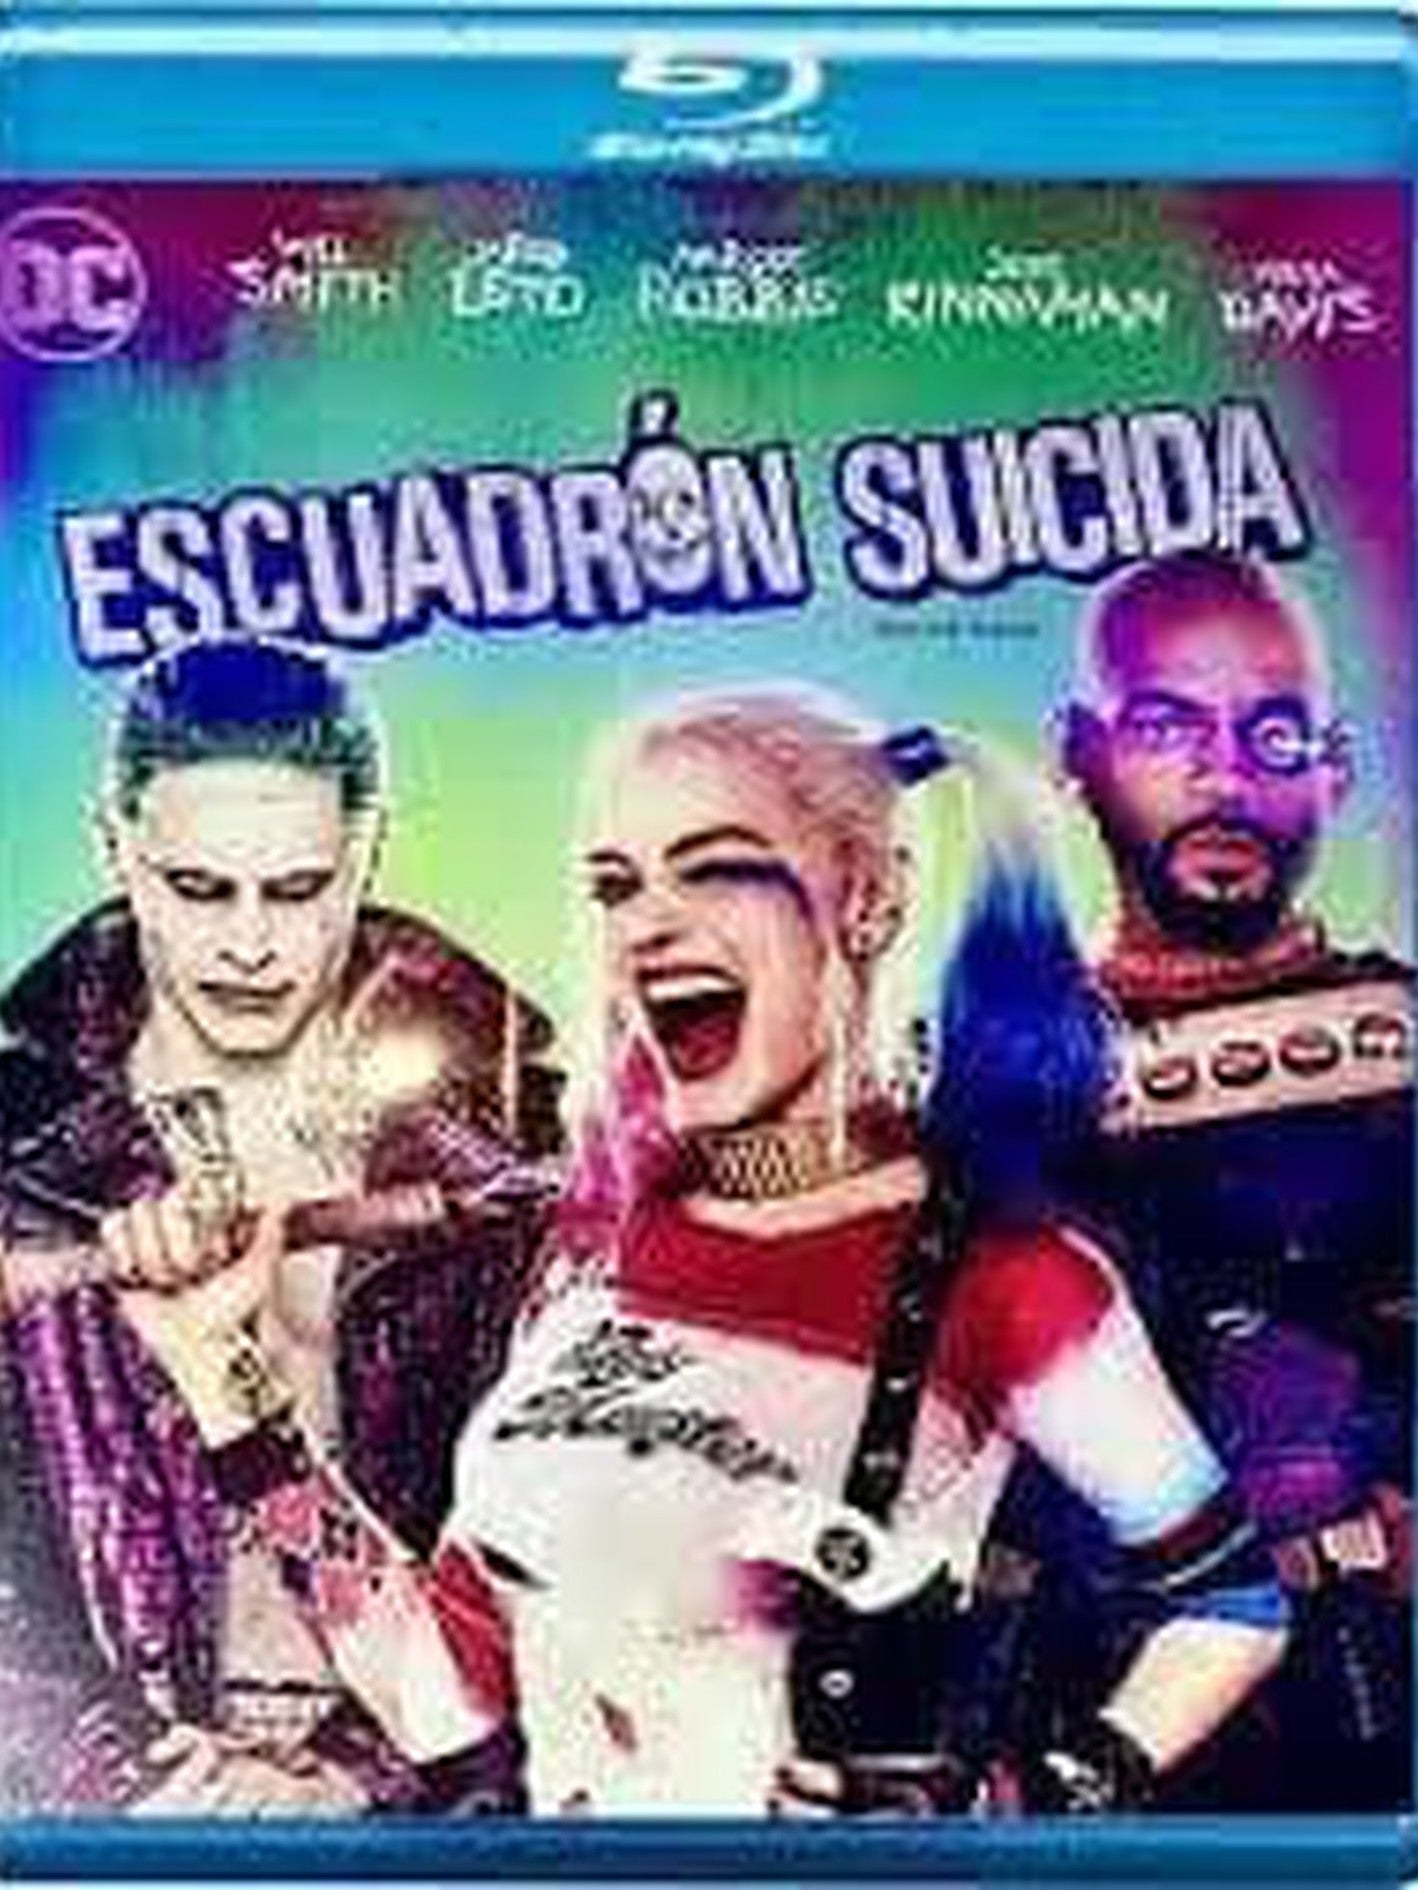 Escuadrón Suicida (Suicide Squad) Blu-Ray Cinecolor ENcuadrocomics